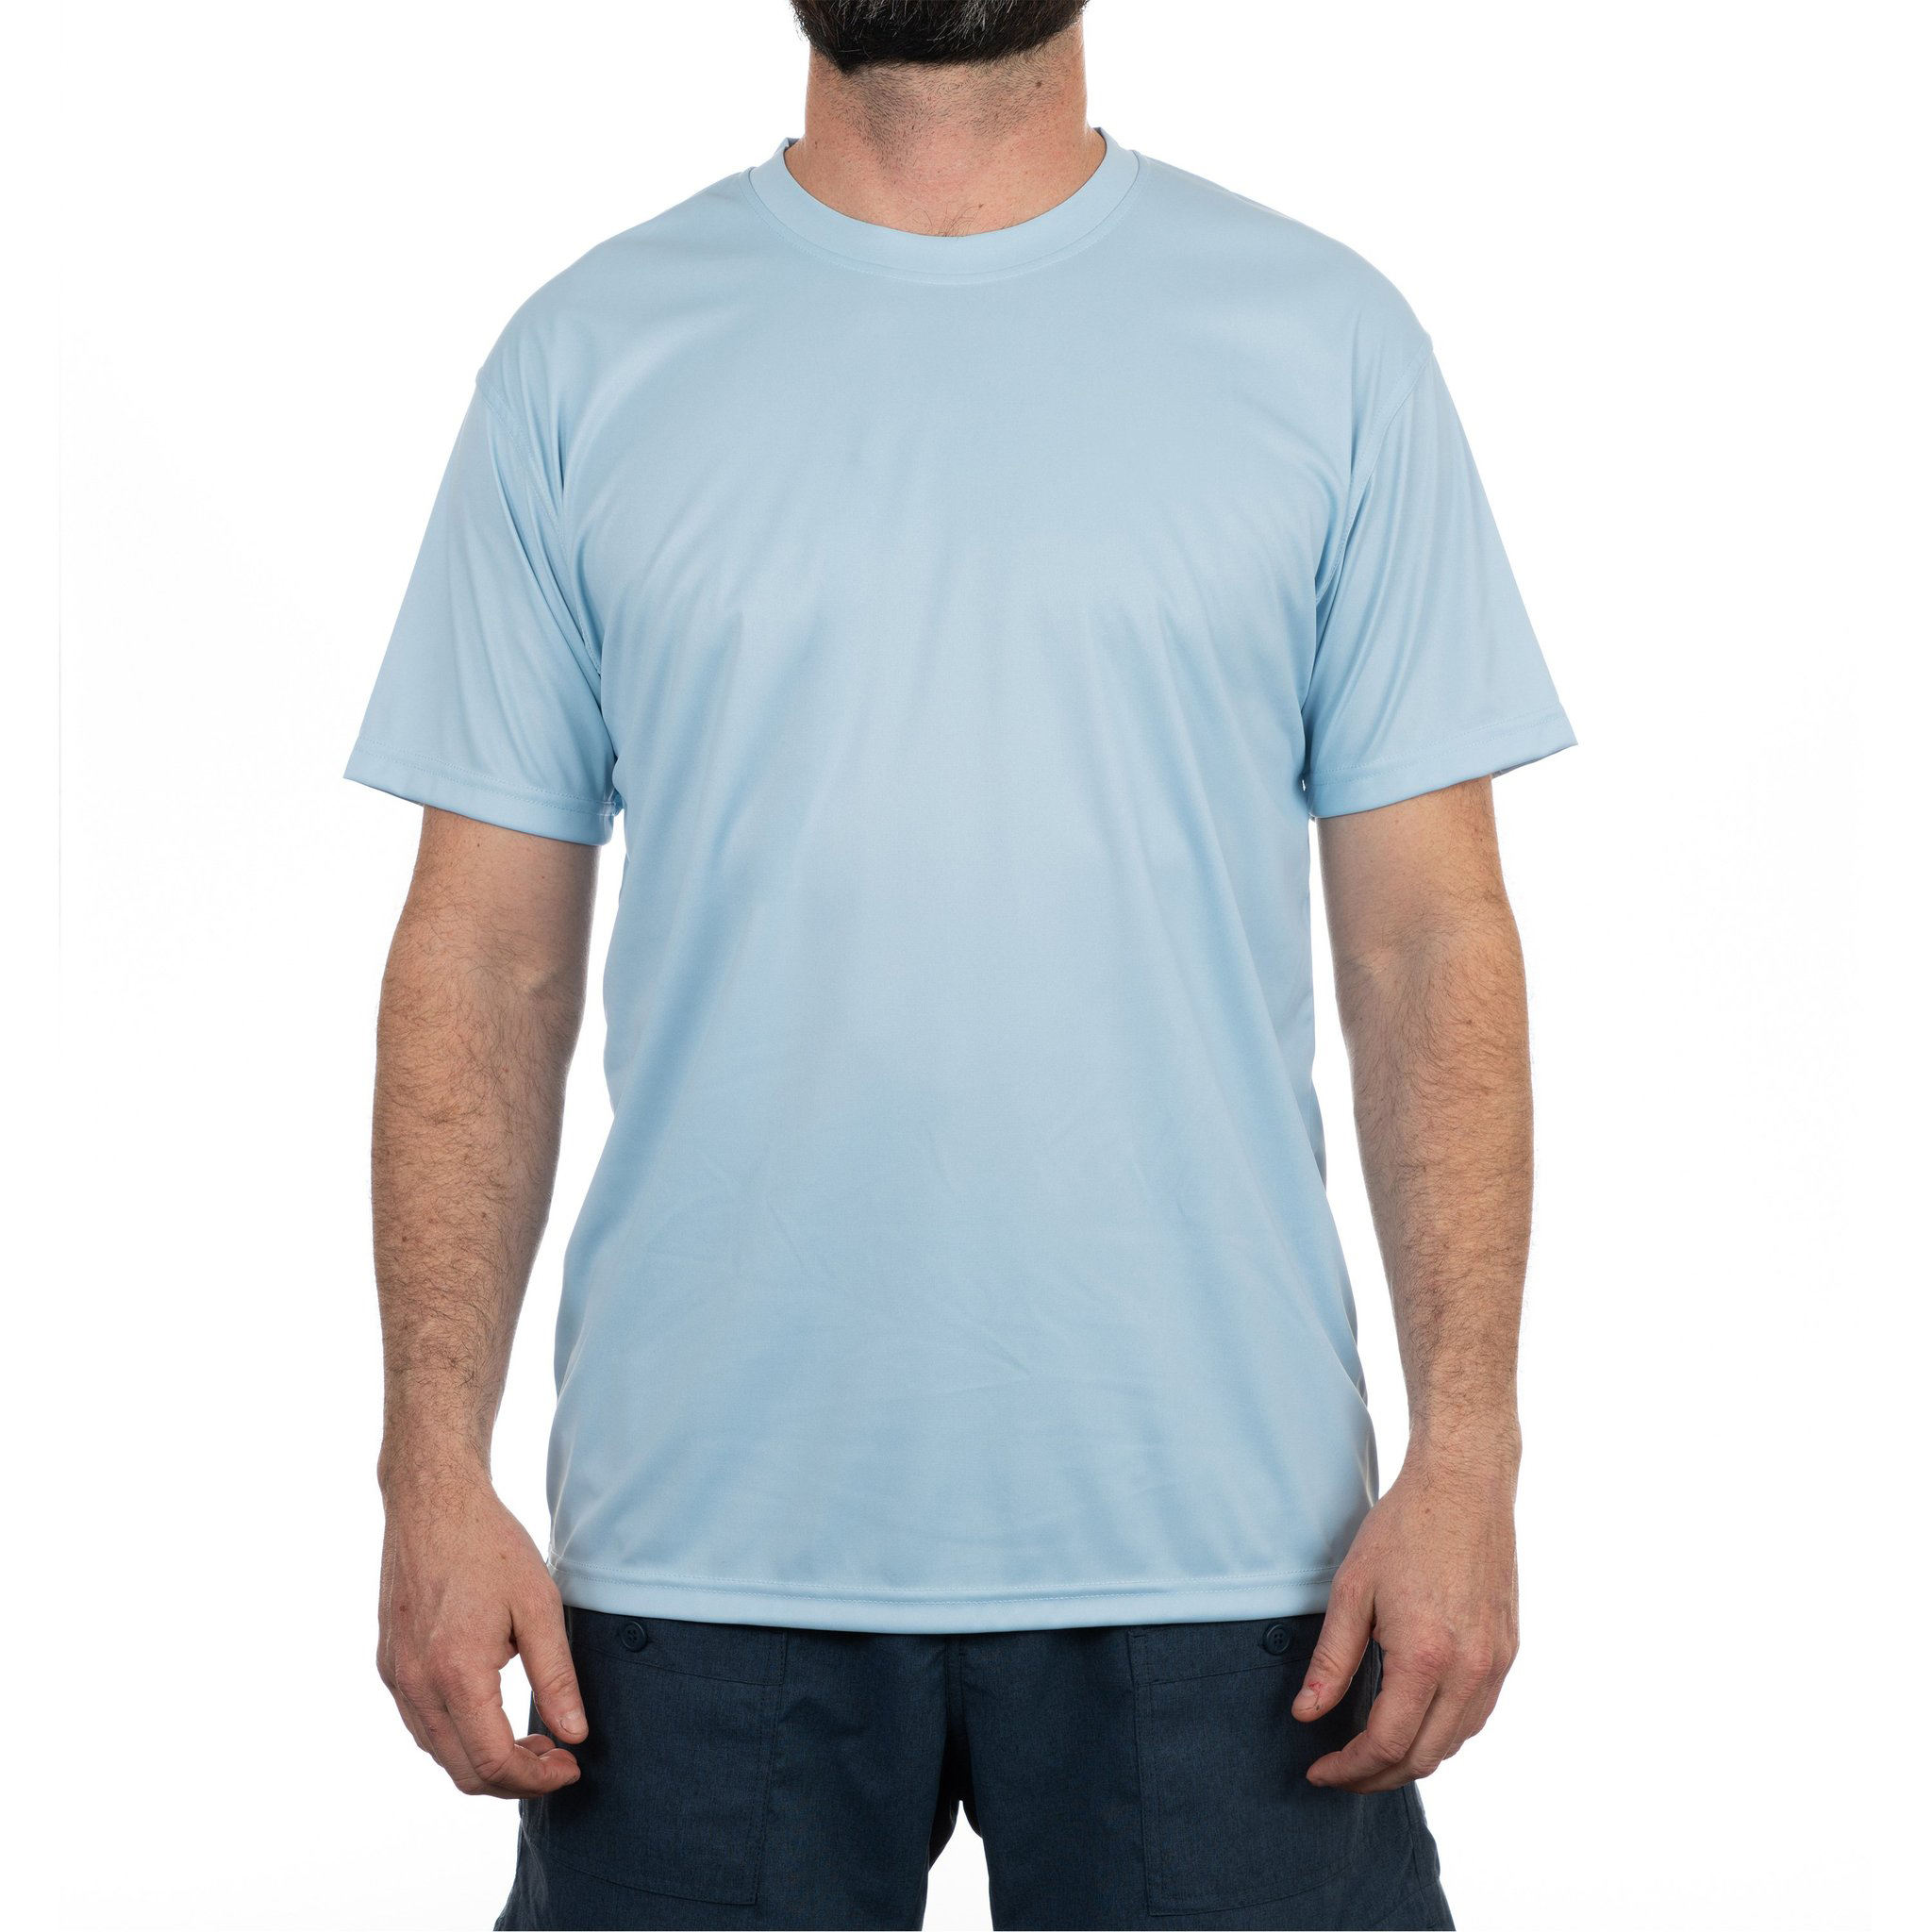 OEM-Hersteller, individuelles Logo, 100 % Polyester, Sonnenschutz, schnell trocknend, Angel-T-Shirt für Herren